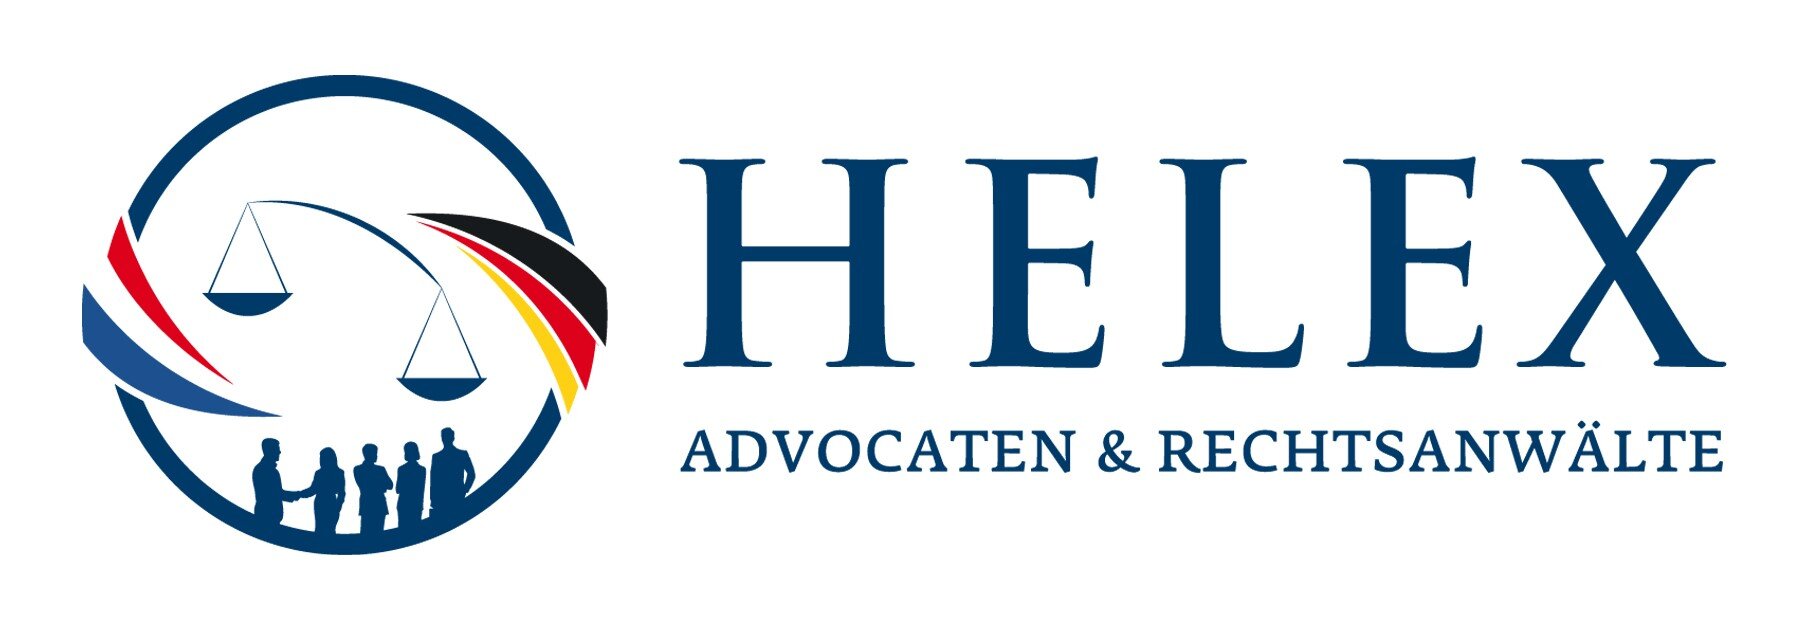 Logo Helex Advocatenen Rechstanwaelte in blauw op wit.